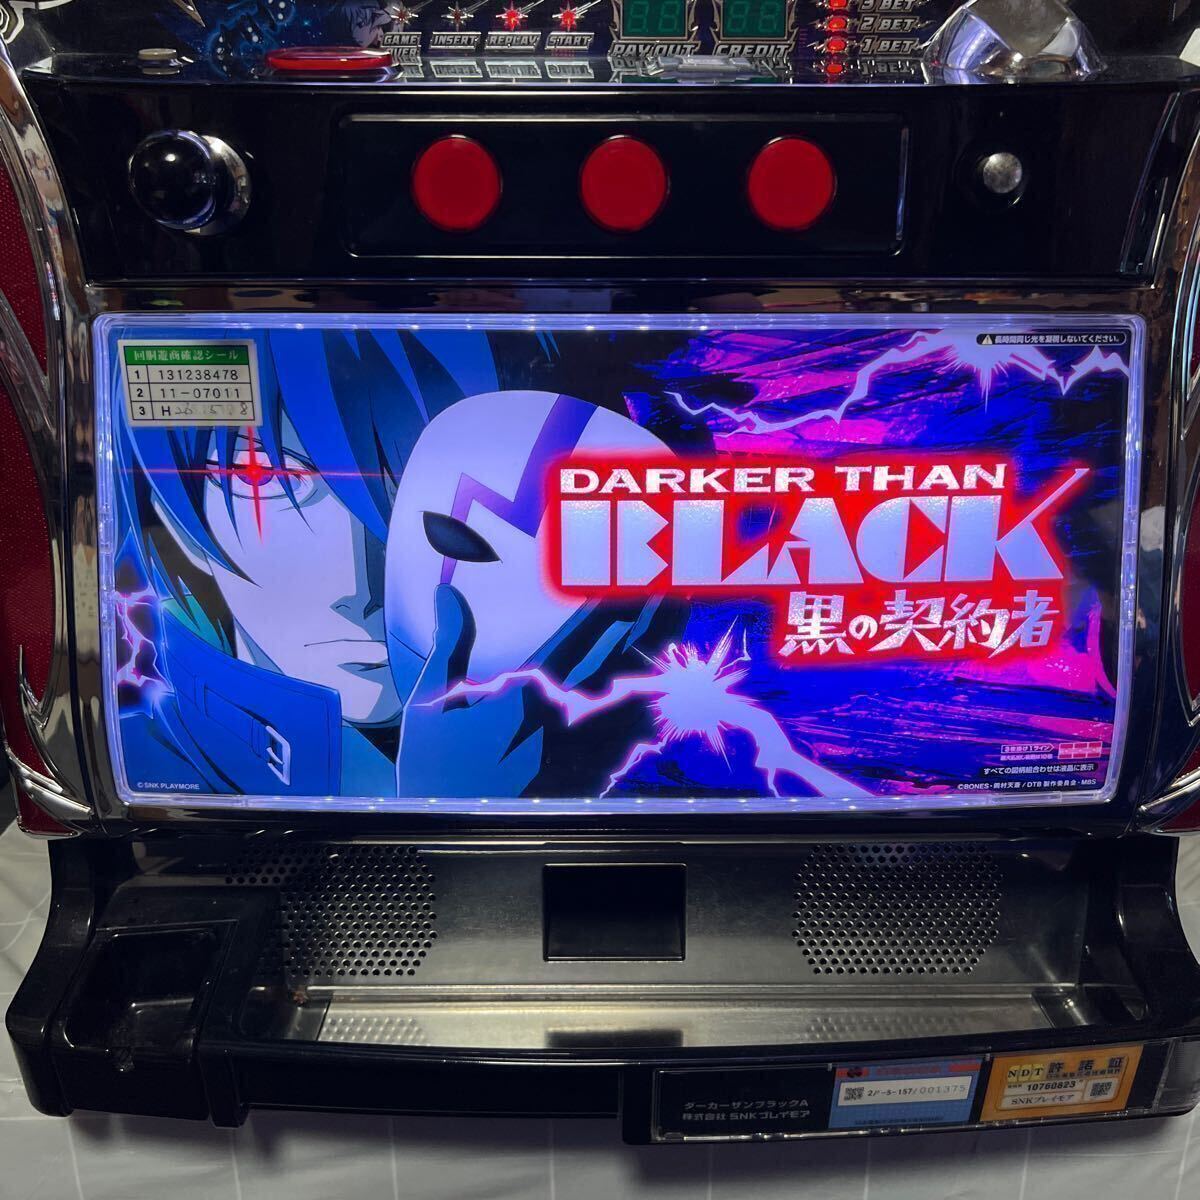  самовывоз ограничение Nagoya город игровой автомат da- машина The n черный A (5 серийный номер ) SNK Play moa [ монета не необходимо машина имеется ]